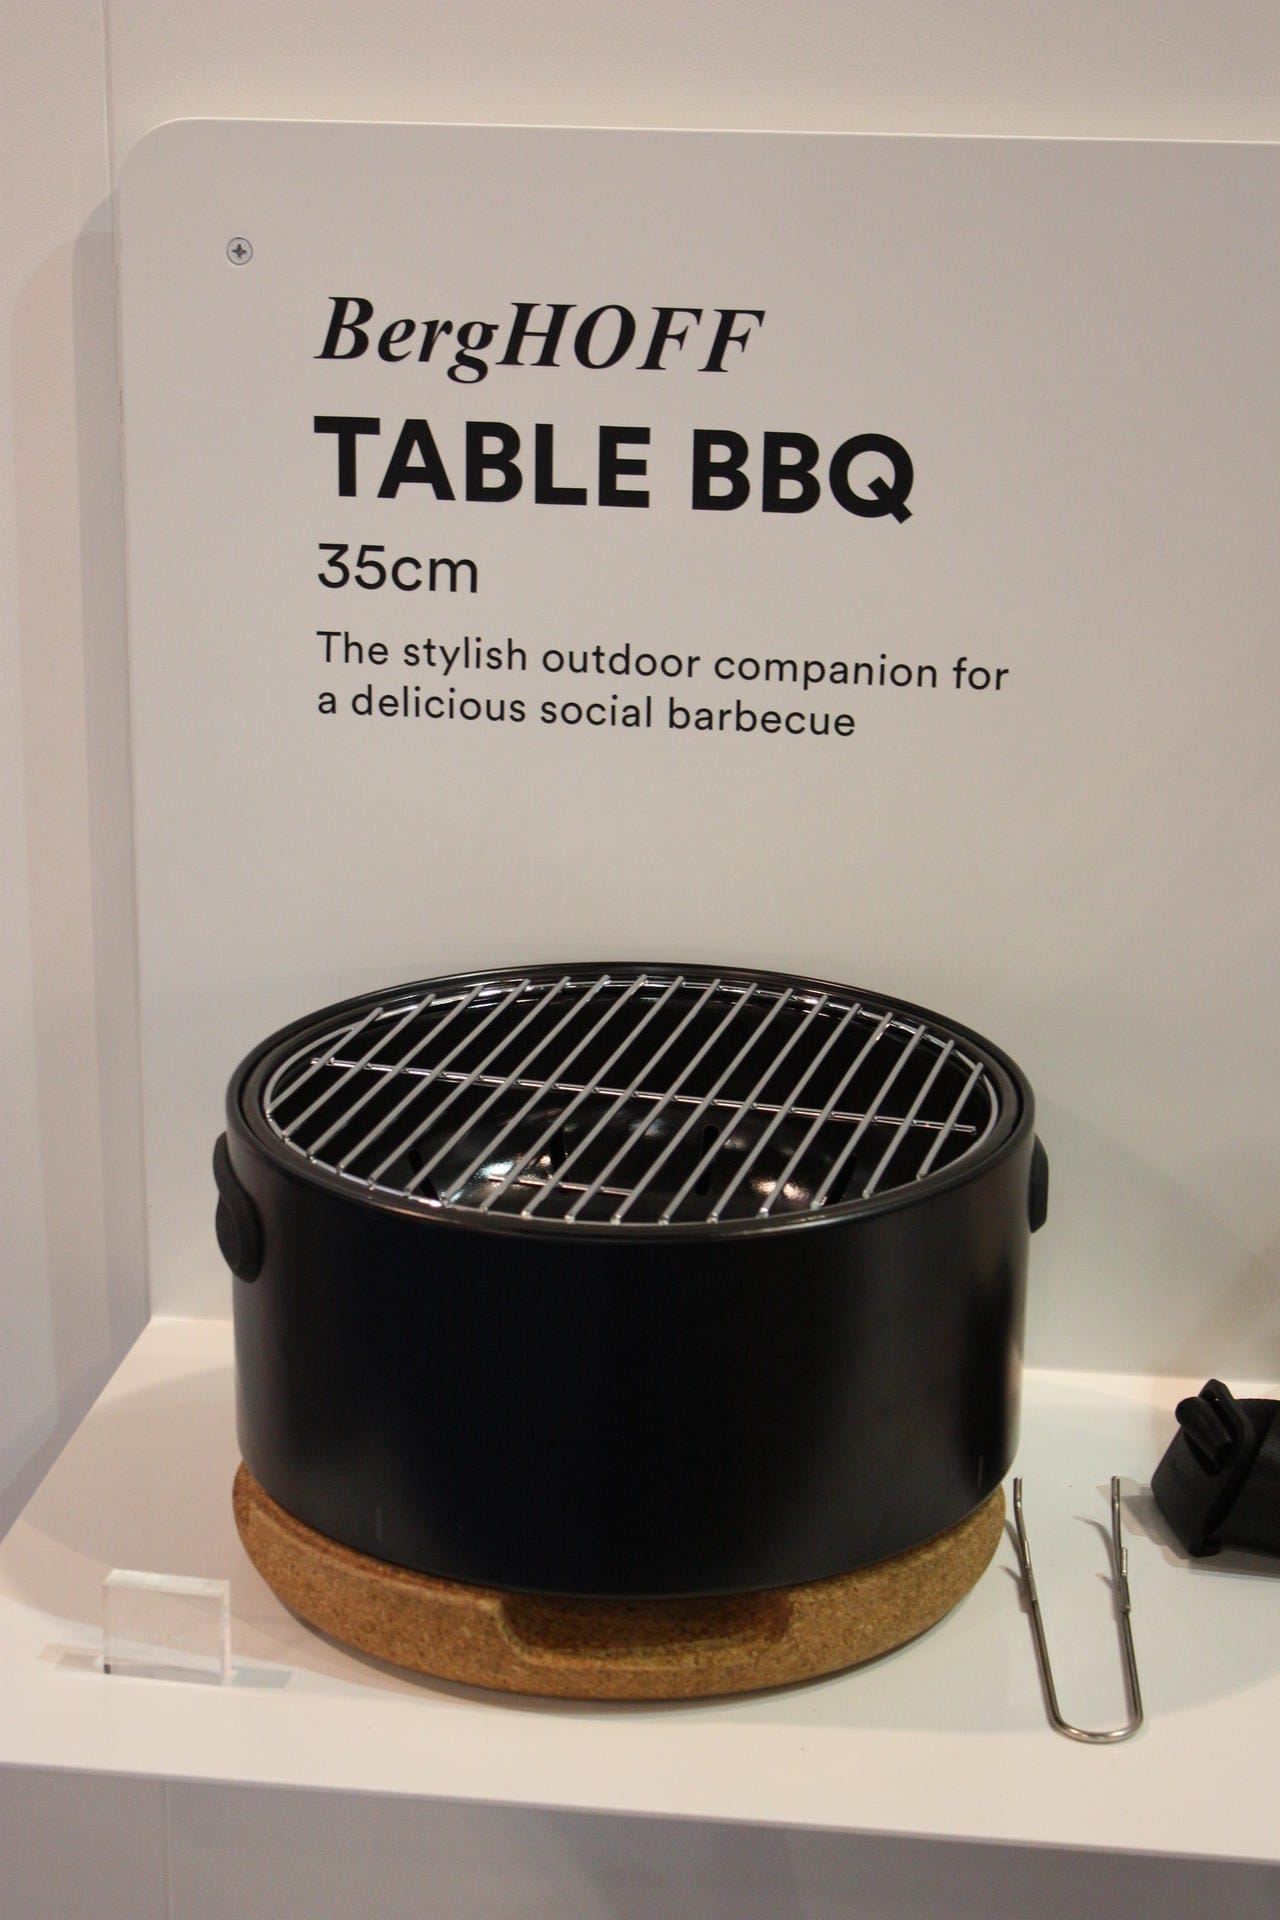 Der tragbare "Table BBQ" von Berghoff lässt sich mit Holzkohle dank Tragegurt überall mit hinnehmen und grillt mit Holzkohle.